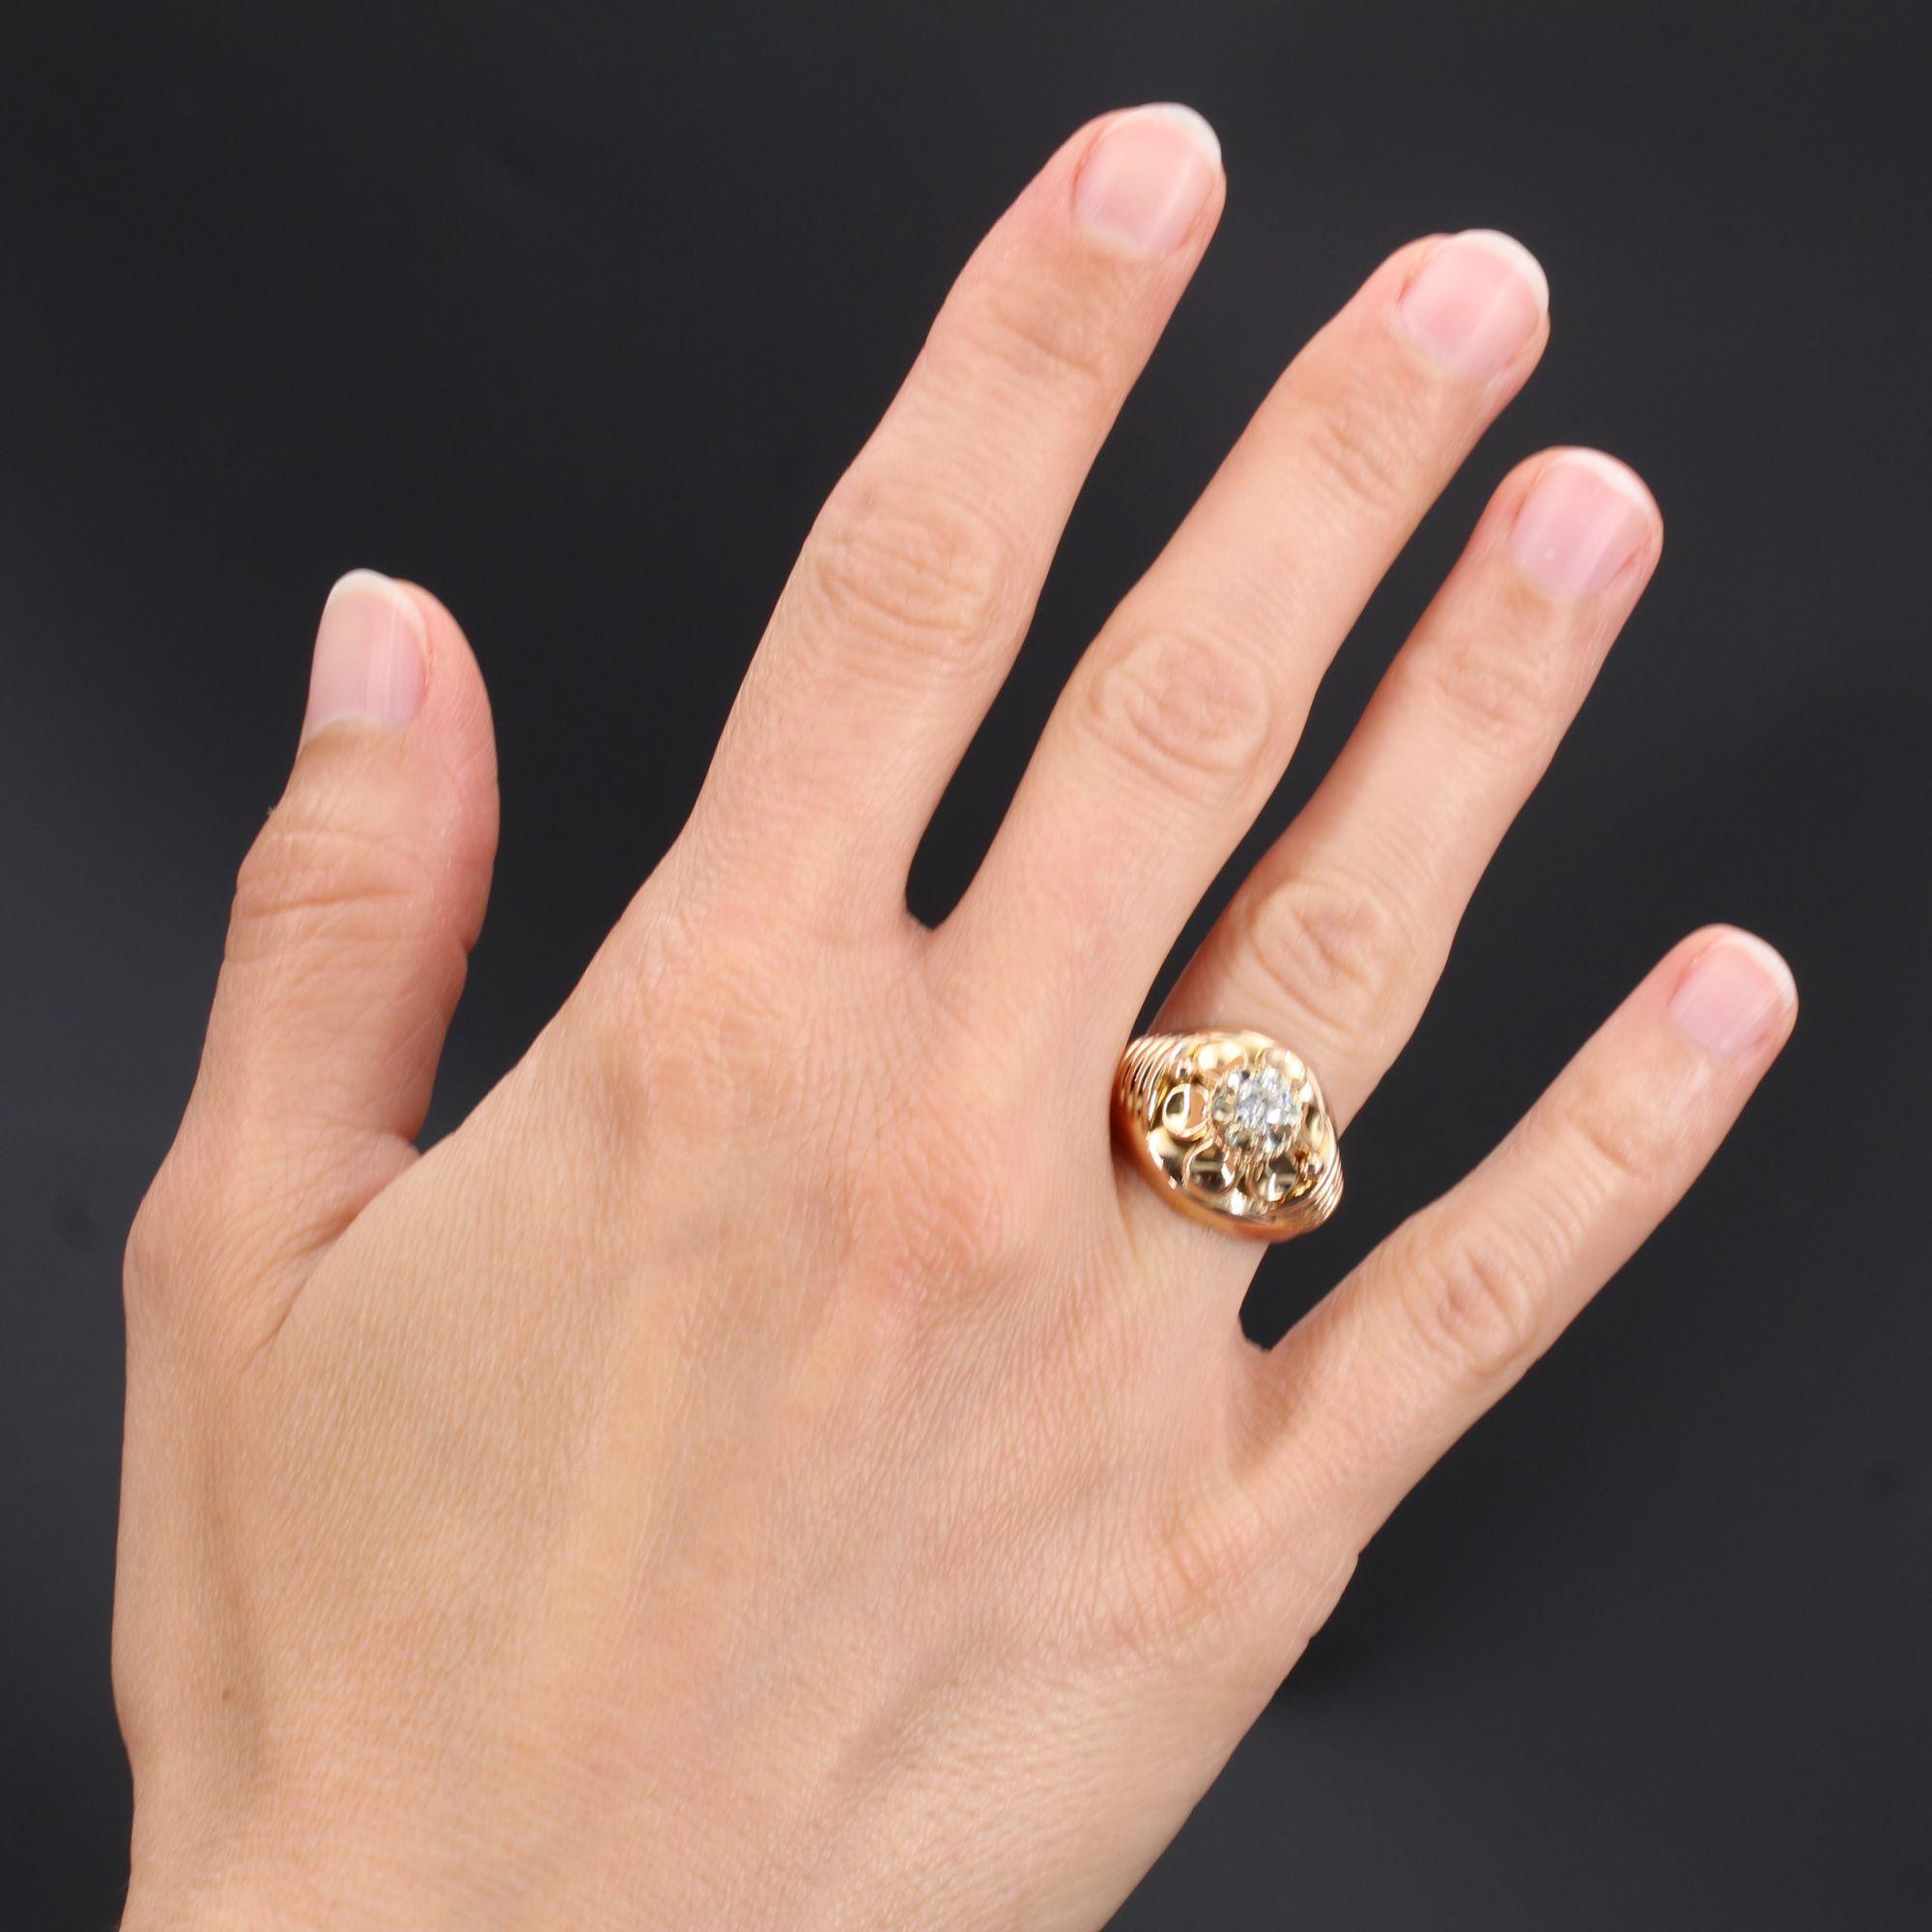 Ring aus 18 Karat Roségold, Adlerkopfpunze.
Dieser schöne gewölbte Ring stellt eine Blume dar, deren Herz ein antiker Brillant ist, der von einer dünnen Goldkordel umgeben ist. Die Blütenblätter sind geschwungen, und der Anfang des Rings besteht auf